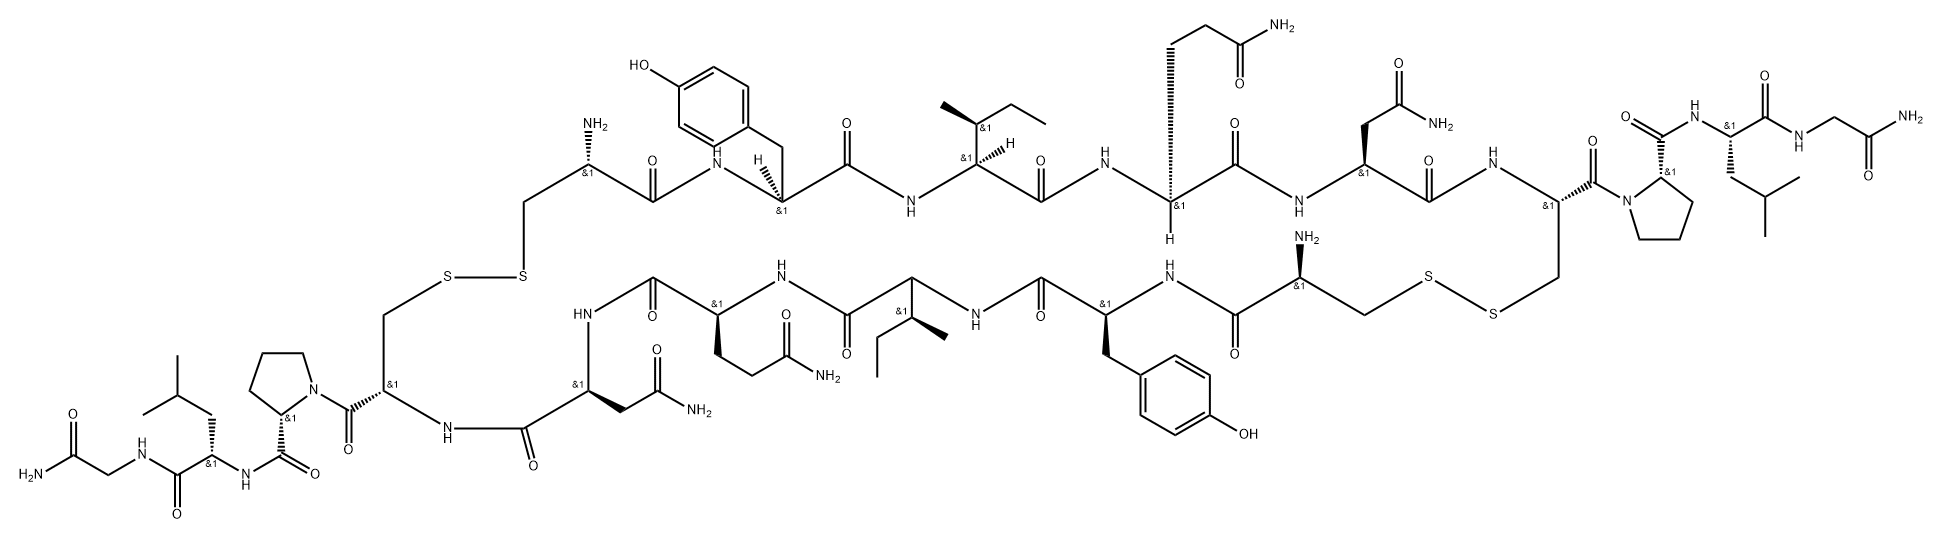 Glycinamide, L-cysteinyl-L-tyrosyl-L-isoleucyl-L-glutaminyl-L-asparaginyl-L-cysteinyl-L-prolyl-L-leucyl-, bimol. cyclic (1→6'),(6→1')-bis(disulfide) Structure